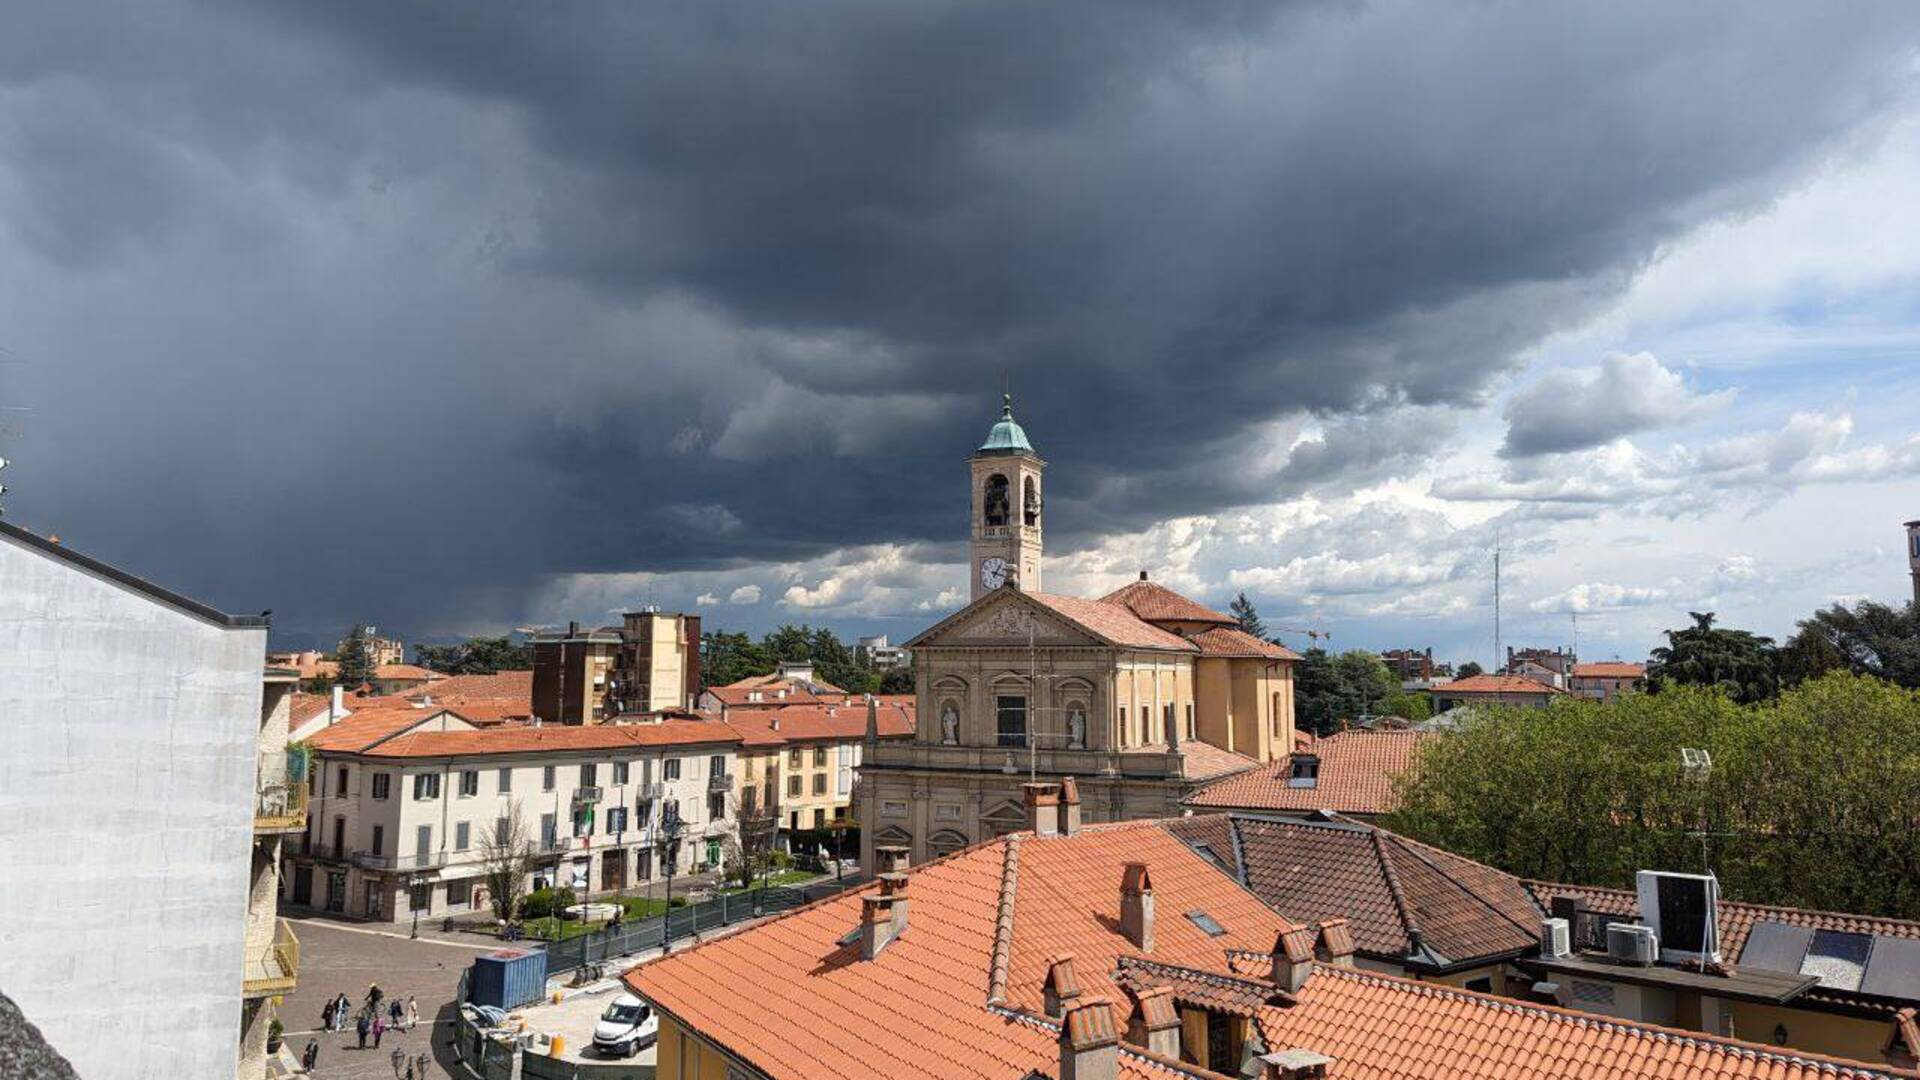 Meteo, cielo nerissimo su Saronno: pioggia ma anche rischio incendi